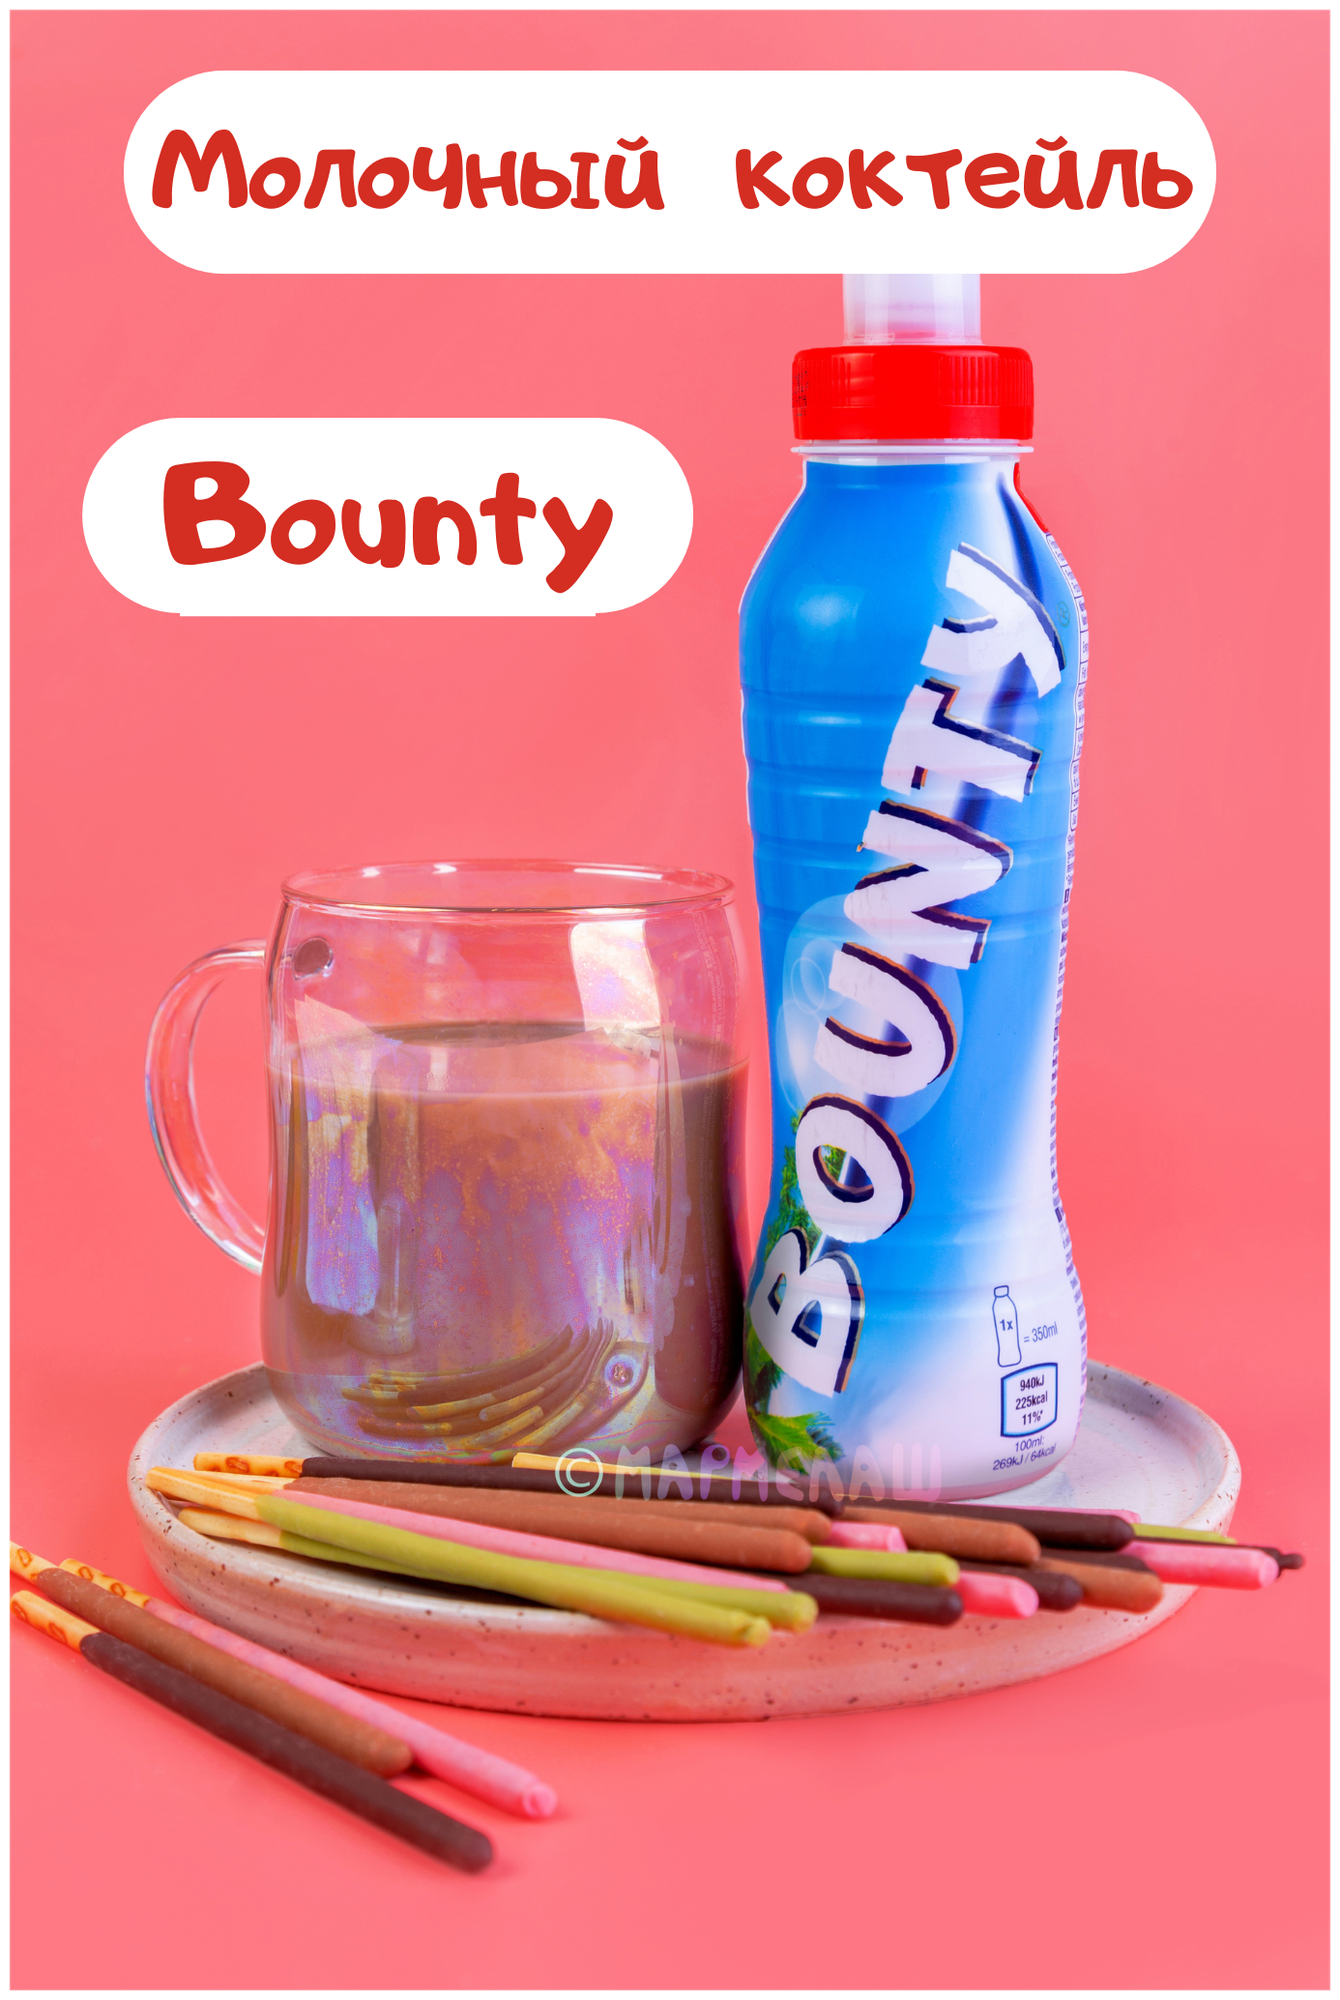 Молочный шоколадный коктейль Bounty - подарок на день рождения, 14 февраля - фотография № 1